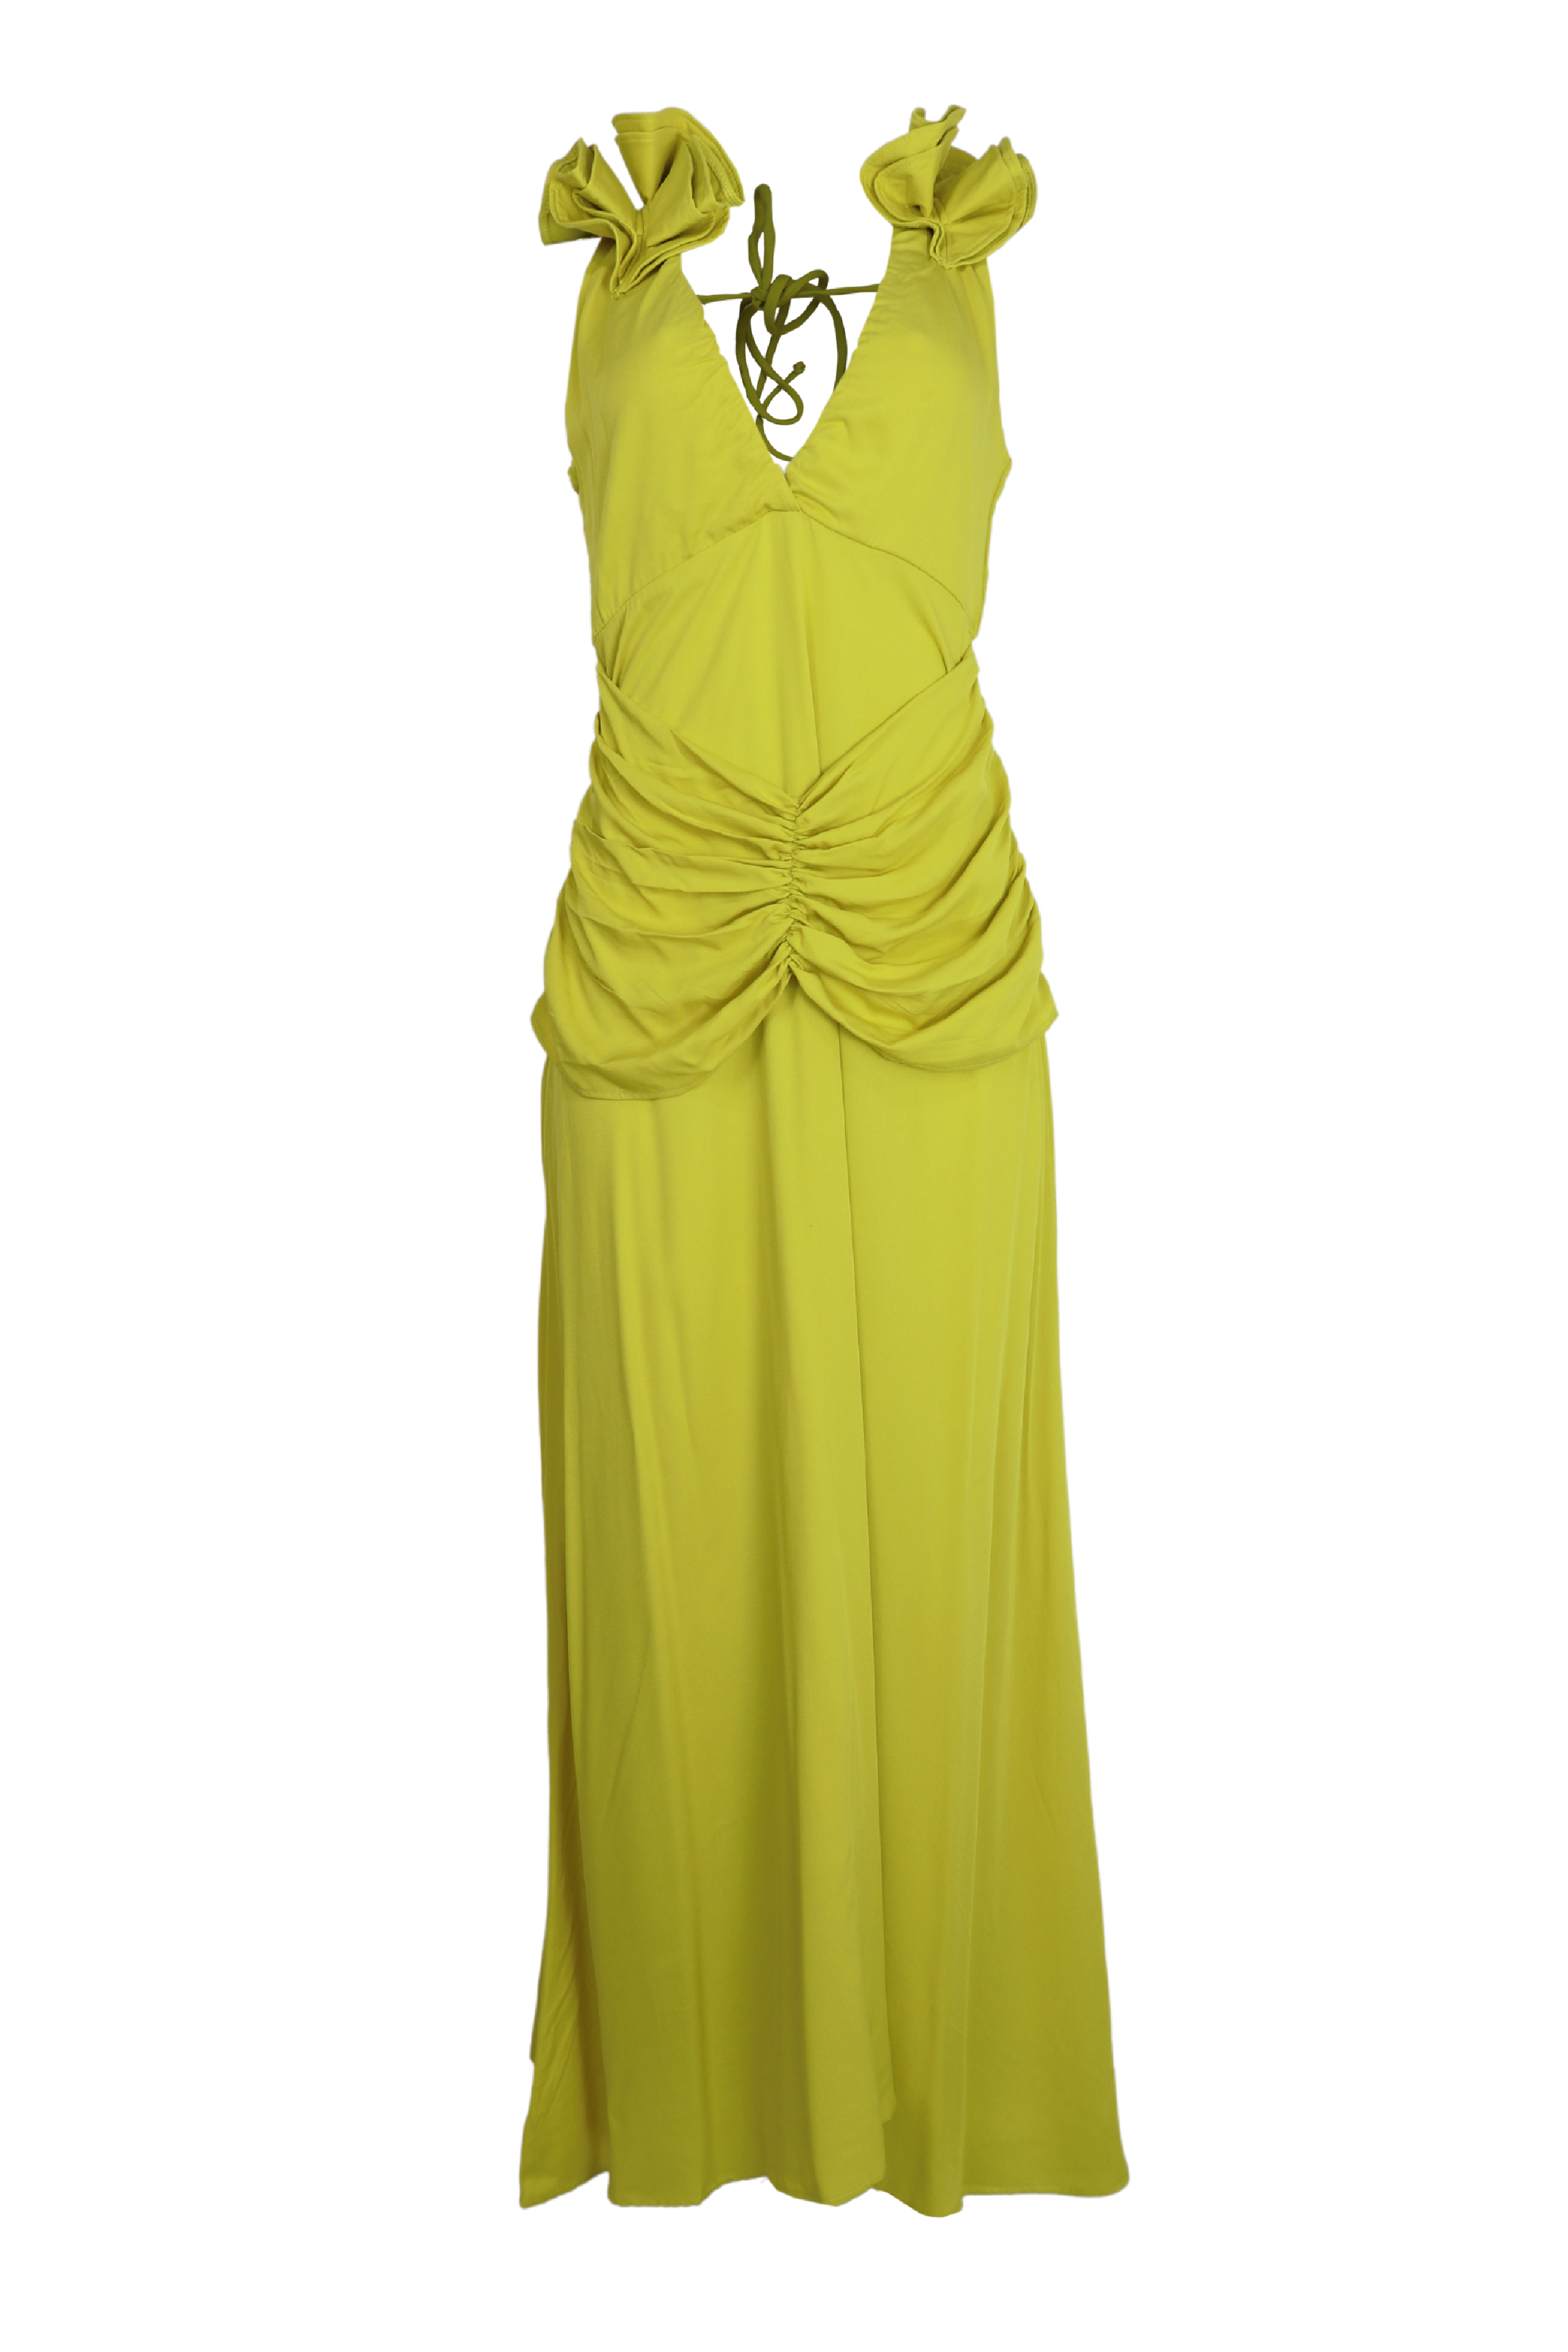 Hermoso vestido largo drapeado con detalles en los hombros color verde neon